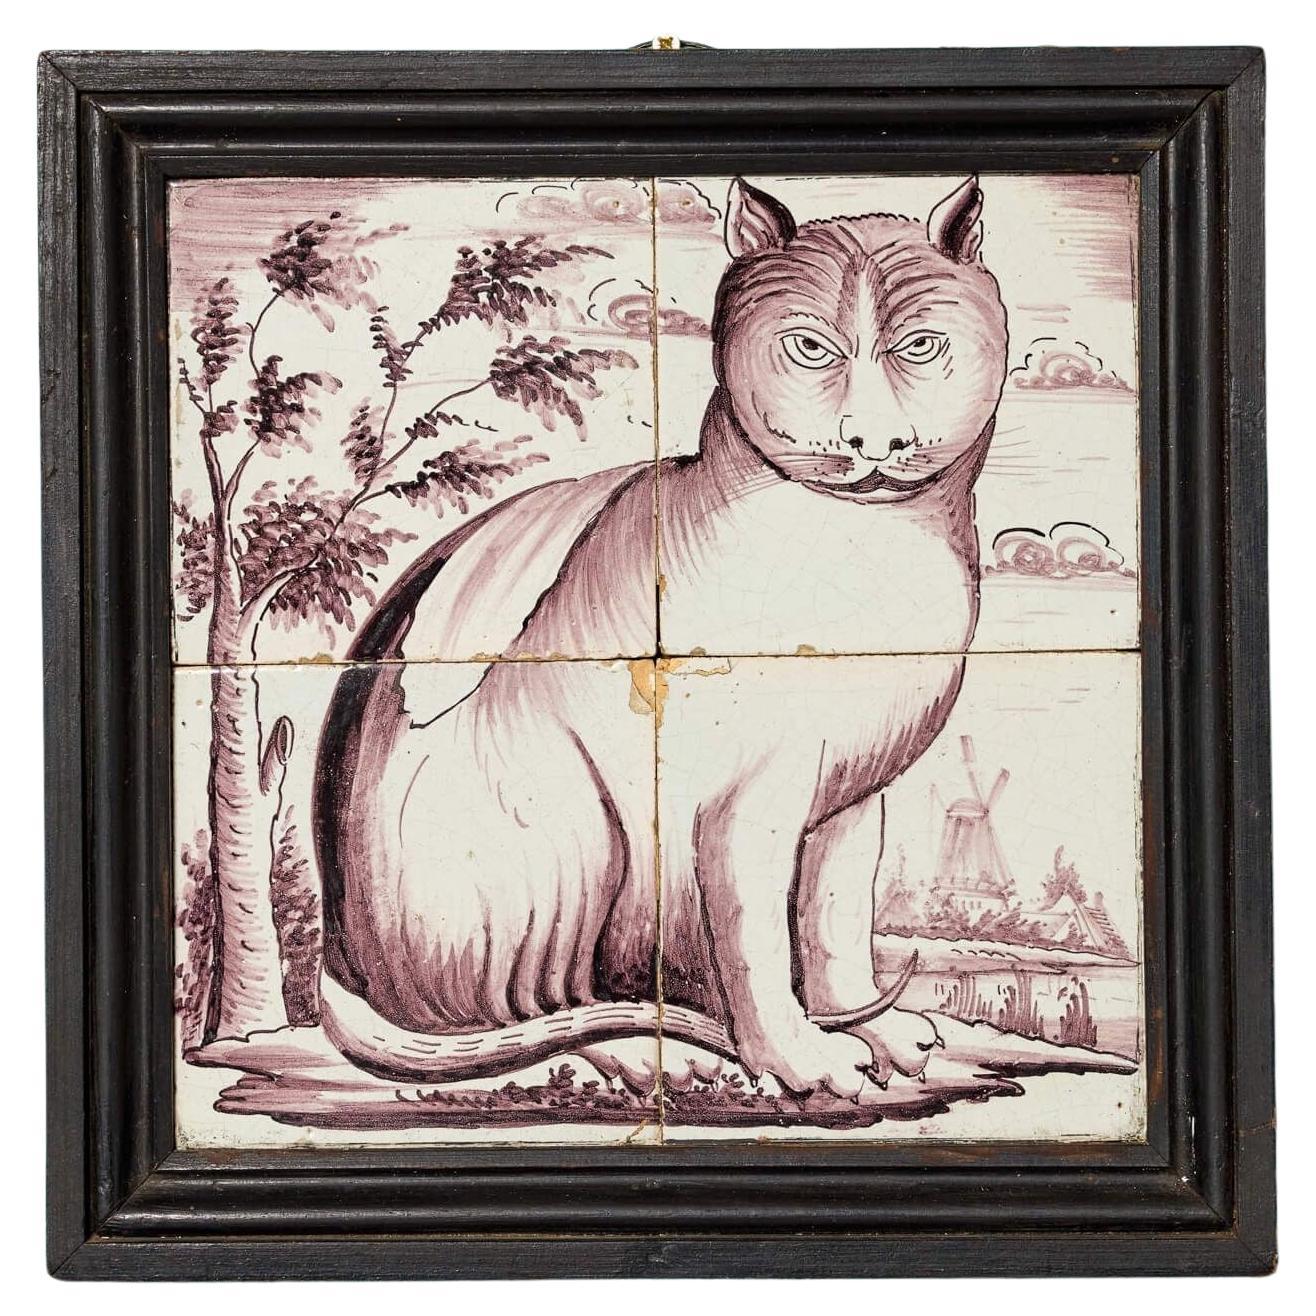 Panneau carrelage de Delft ancien représentant un chat dans un paysage